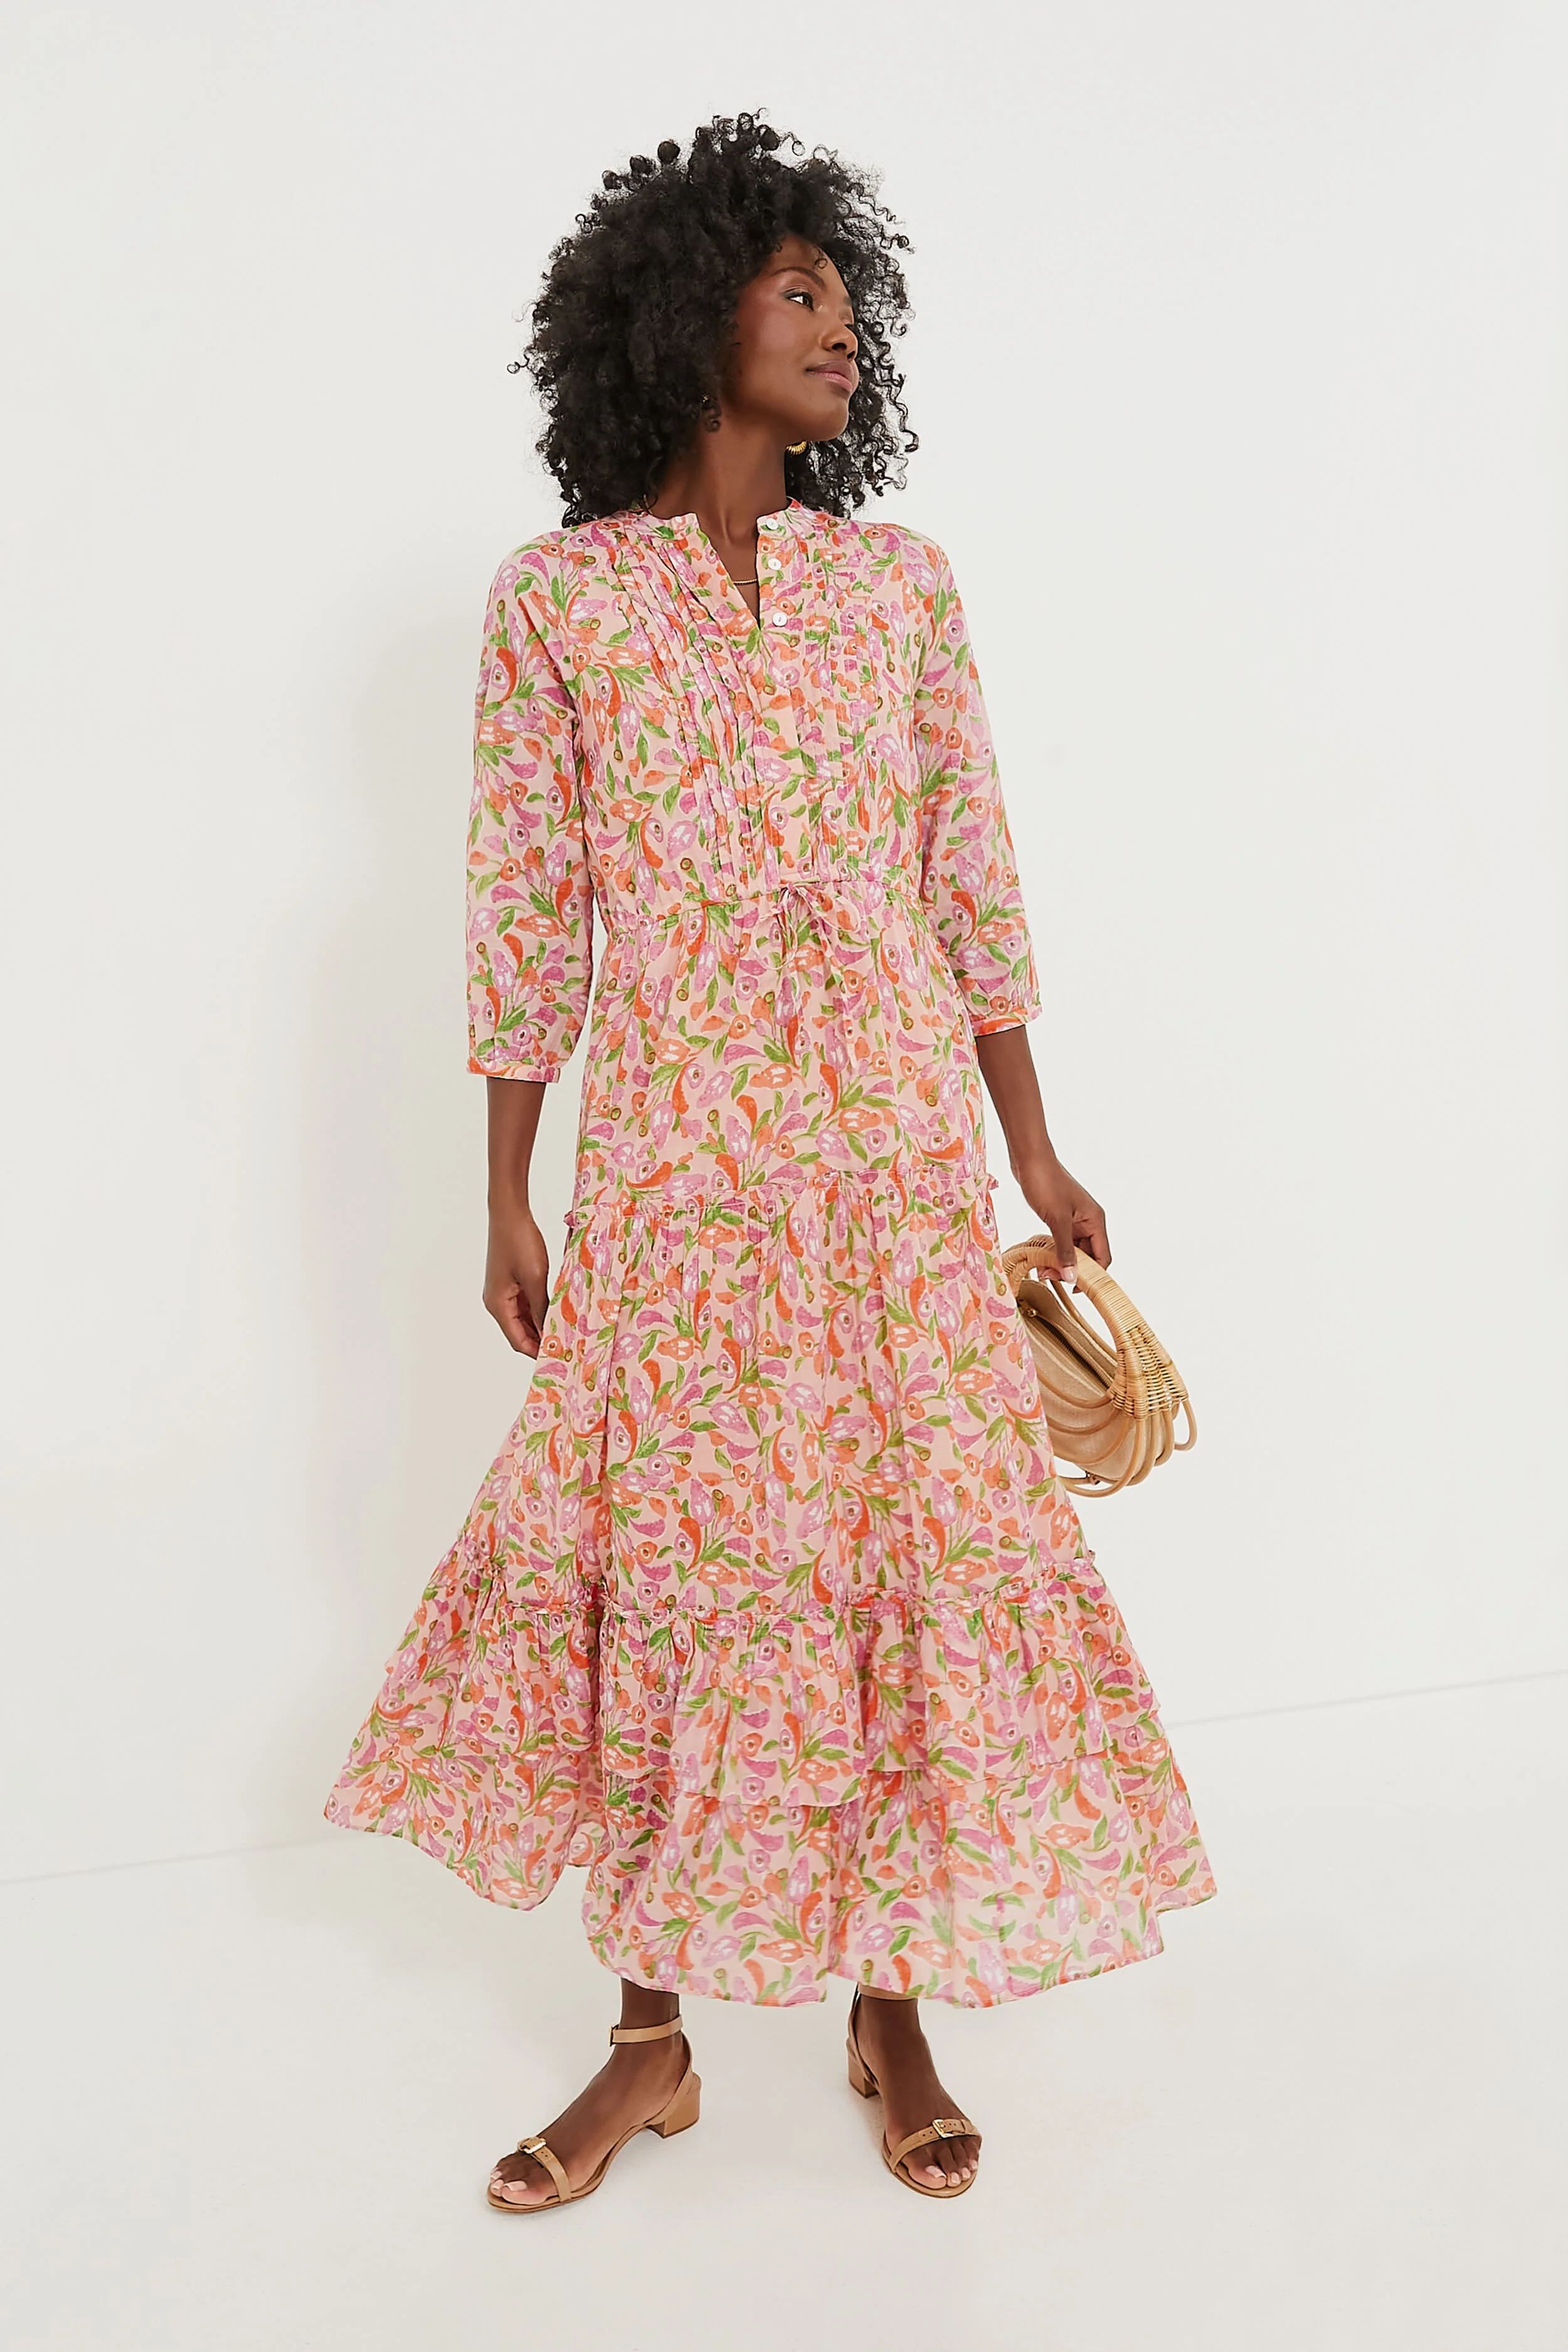 Exclusive Mini Bloom Rose Bazaar Dress | Tuckernuck (US)